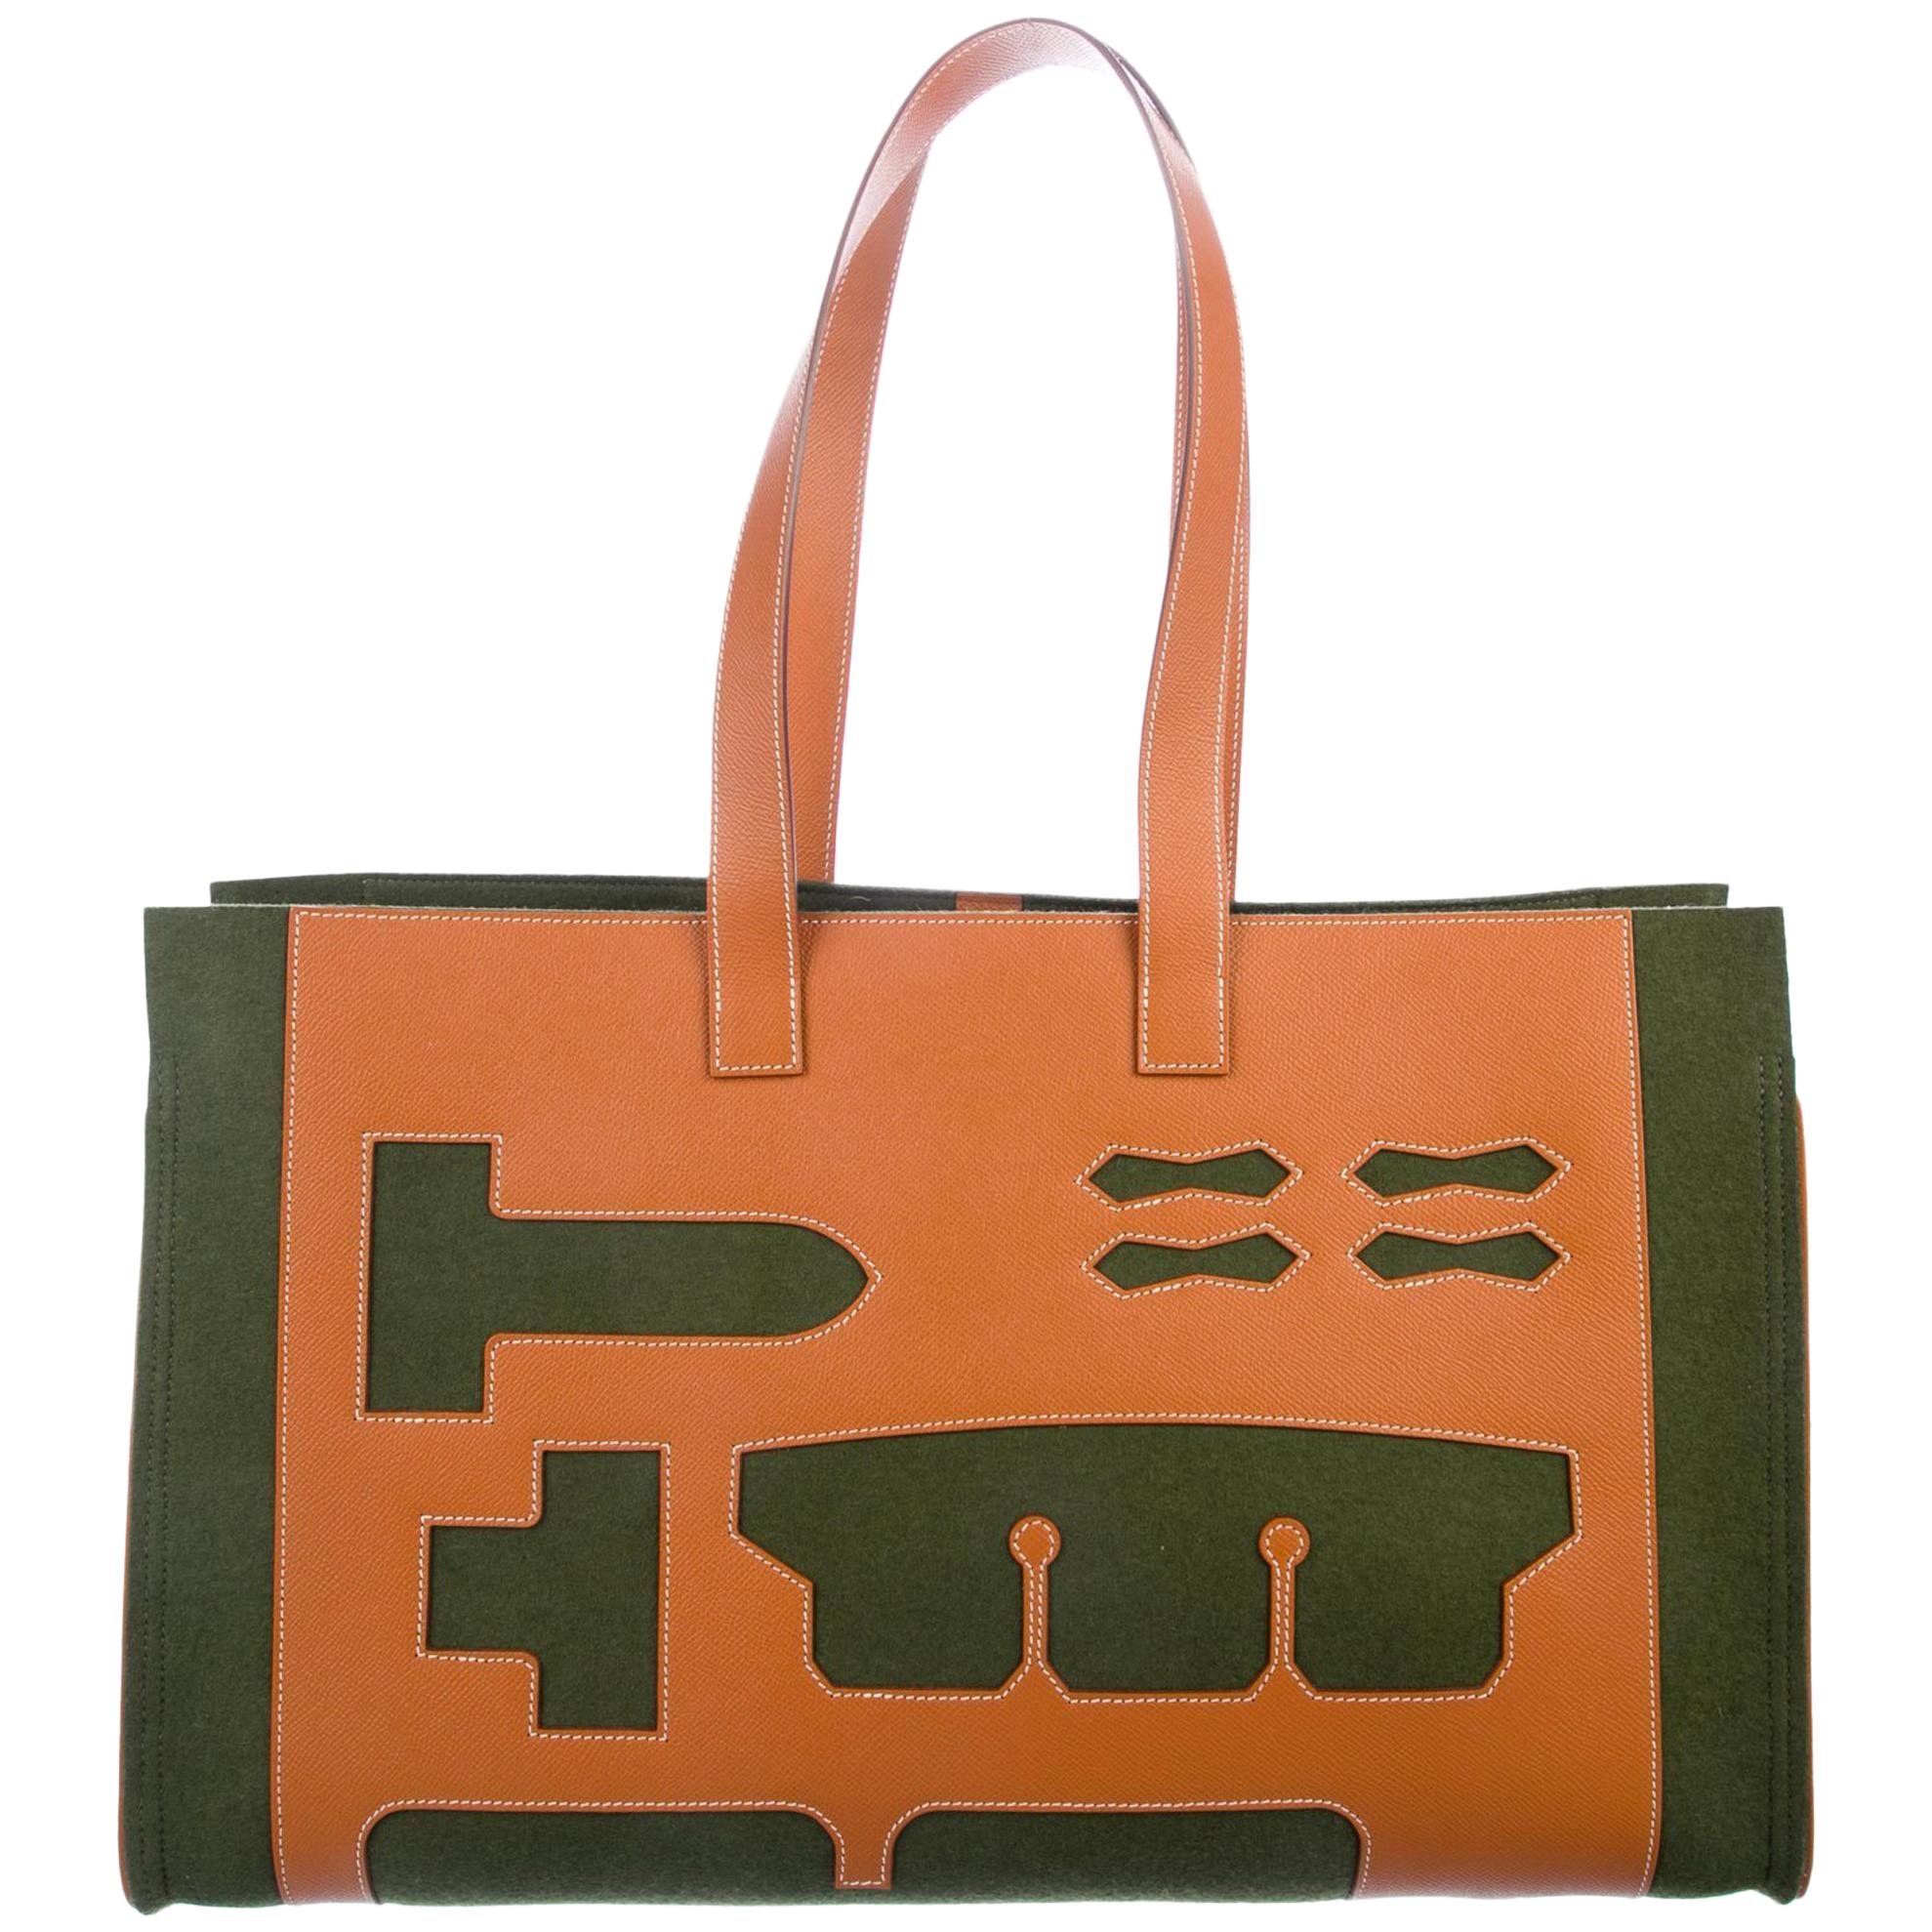 Hermes Green Cognac Tan Wool Top Handle Satchel Carryall Top Handle Tote Bag